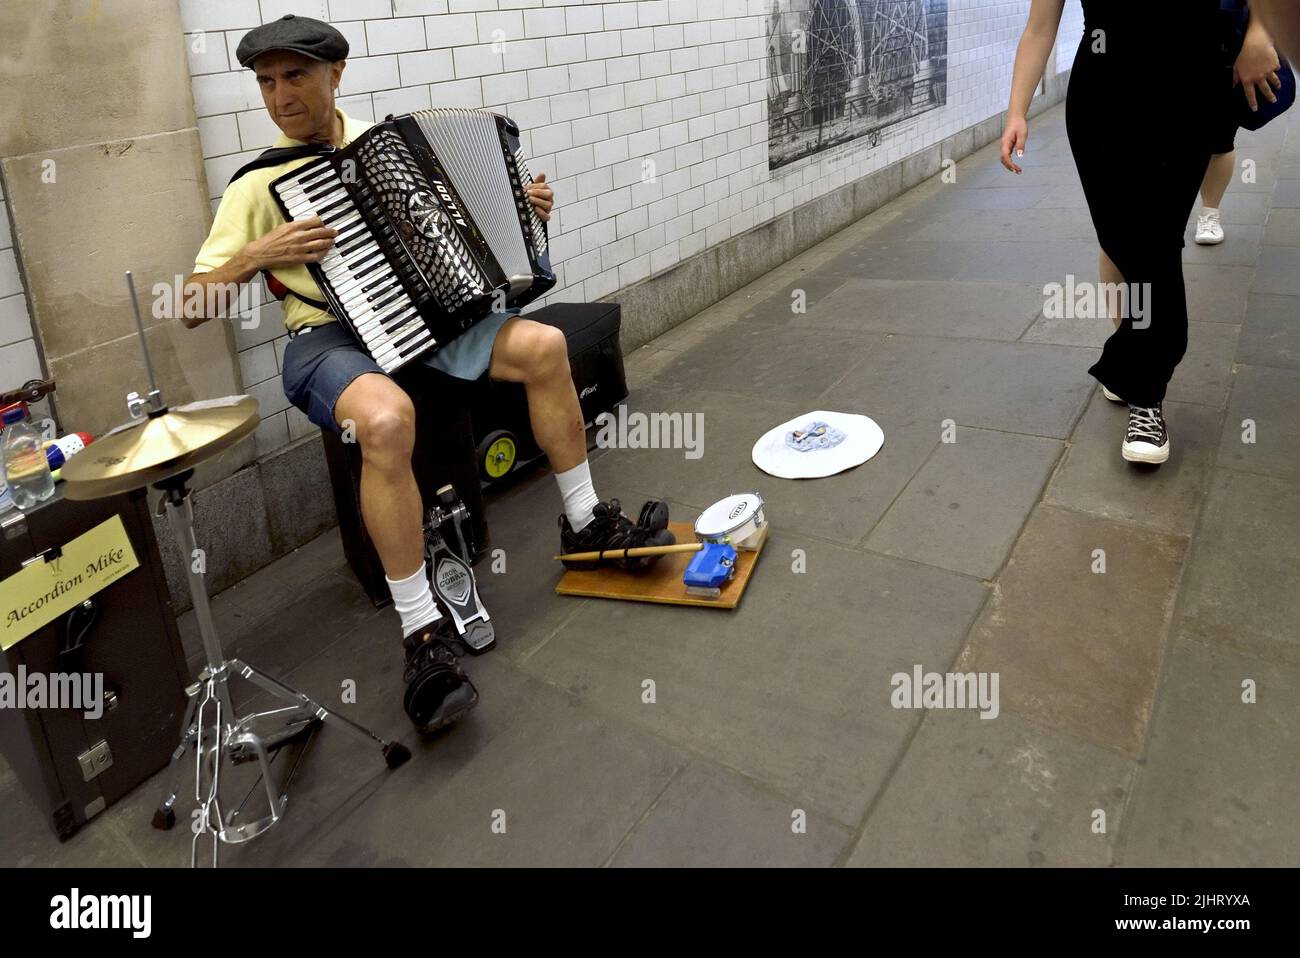 Londres, Angleterre, Royaume-Uni. Busker jouant à l'accordéon dans un tunnel piétonnier sous le pont Blackfriars, sur la rive sud Banque D'Images